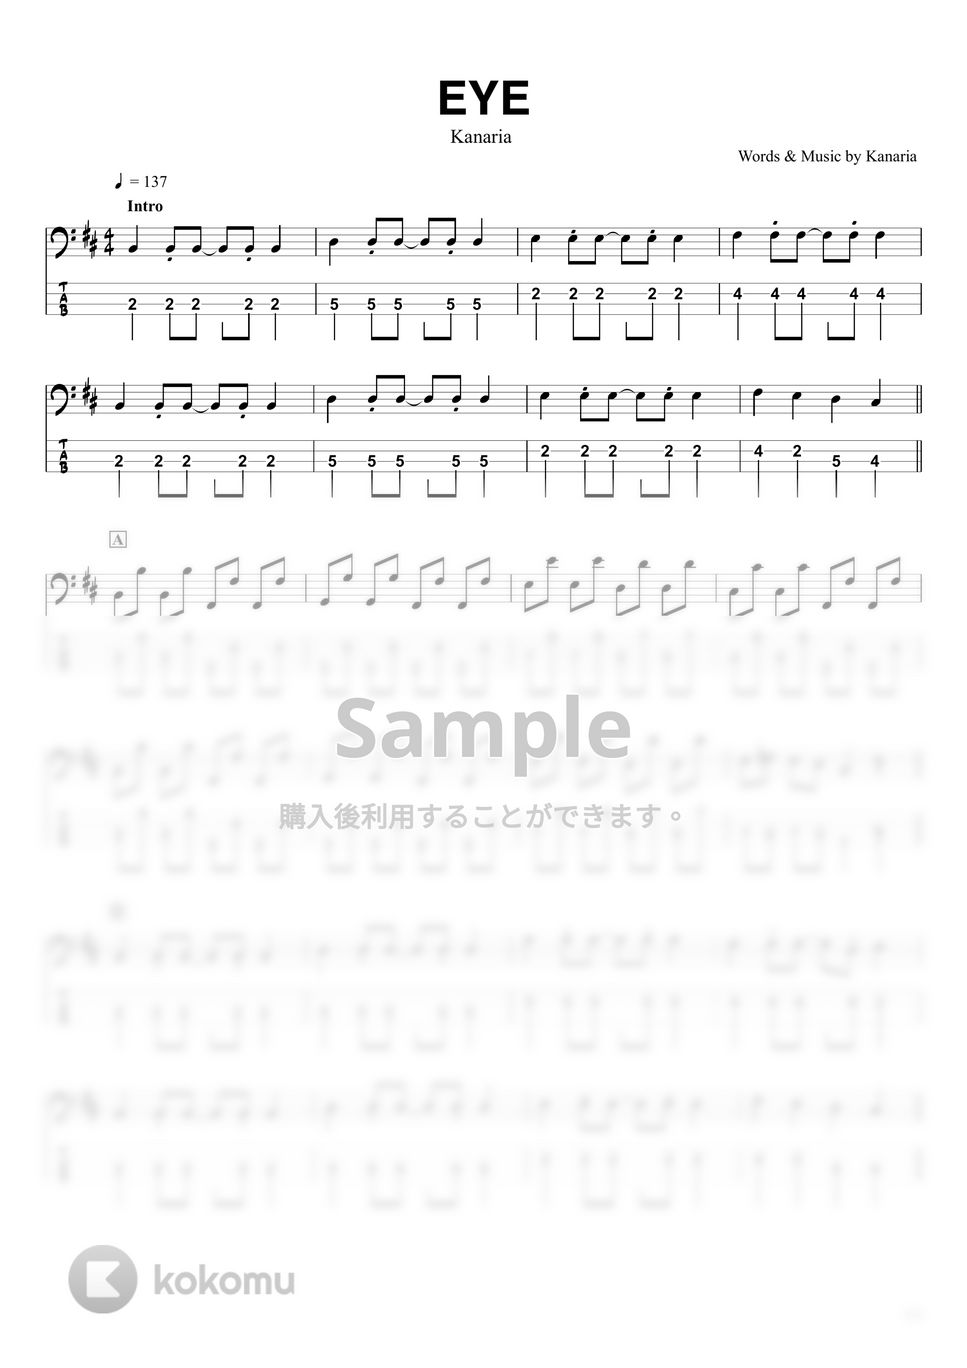 Kanaria - EYE (ベースTAB譜☆4弦ベース対応) by swbass